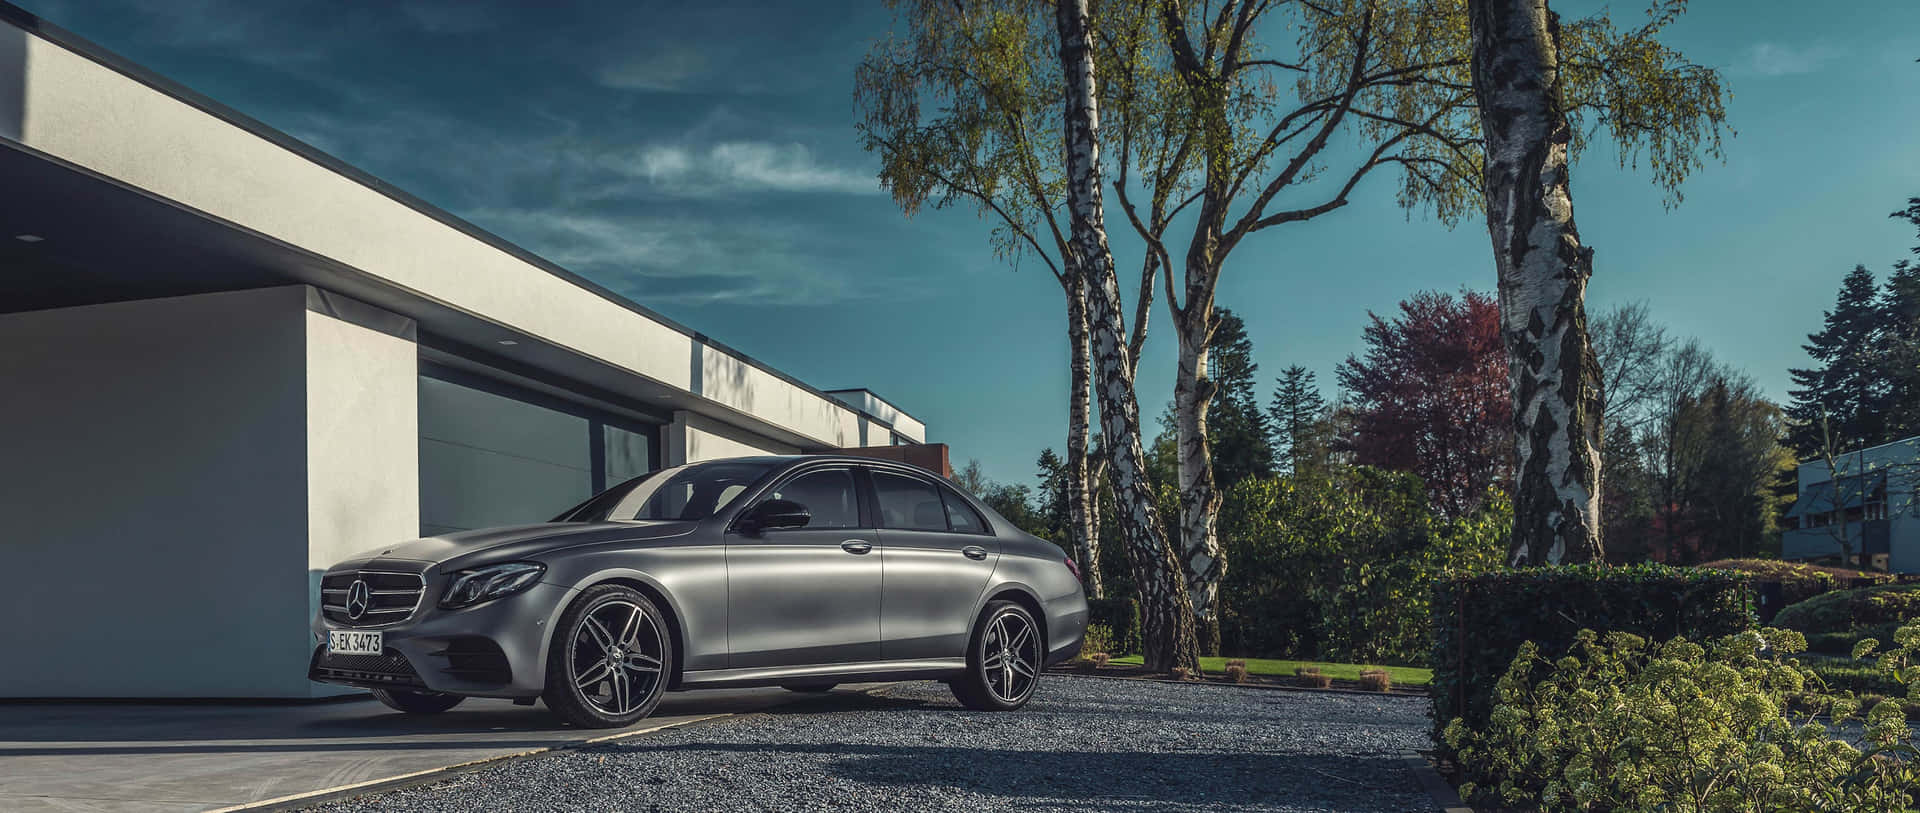 Dieperfekte Balance Von Stil Und Luxus - Mercedes-benz E-klasse Wallpaper